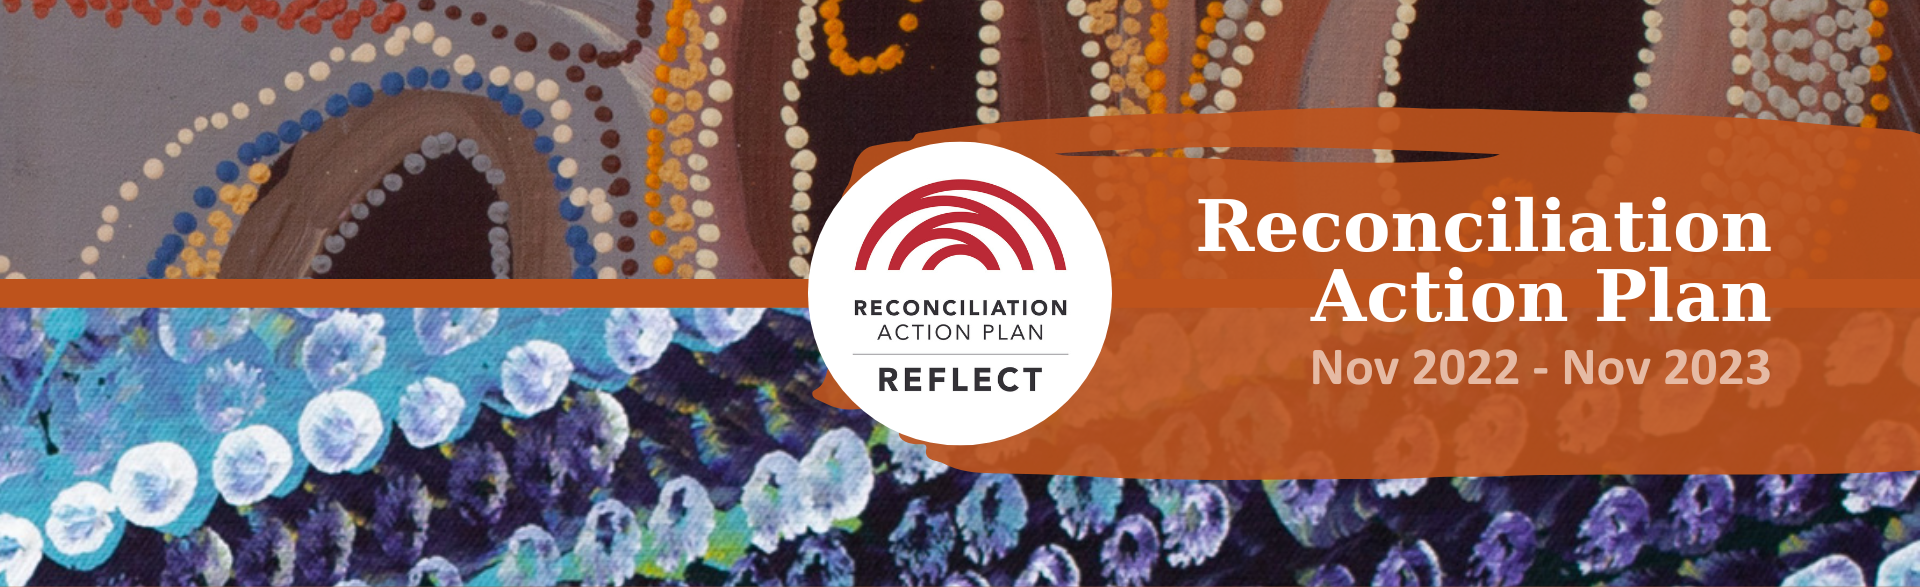 Picture: Reconciliation Action Plan